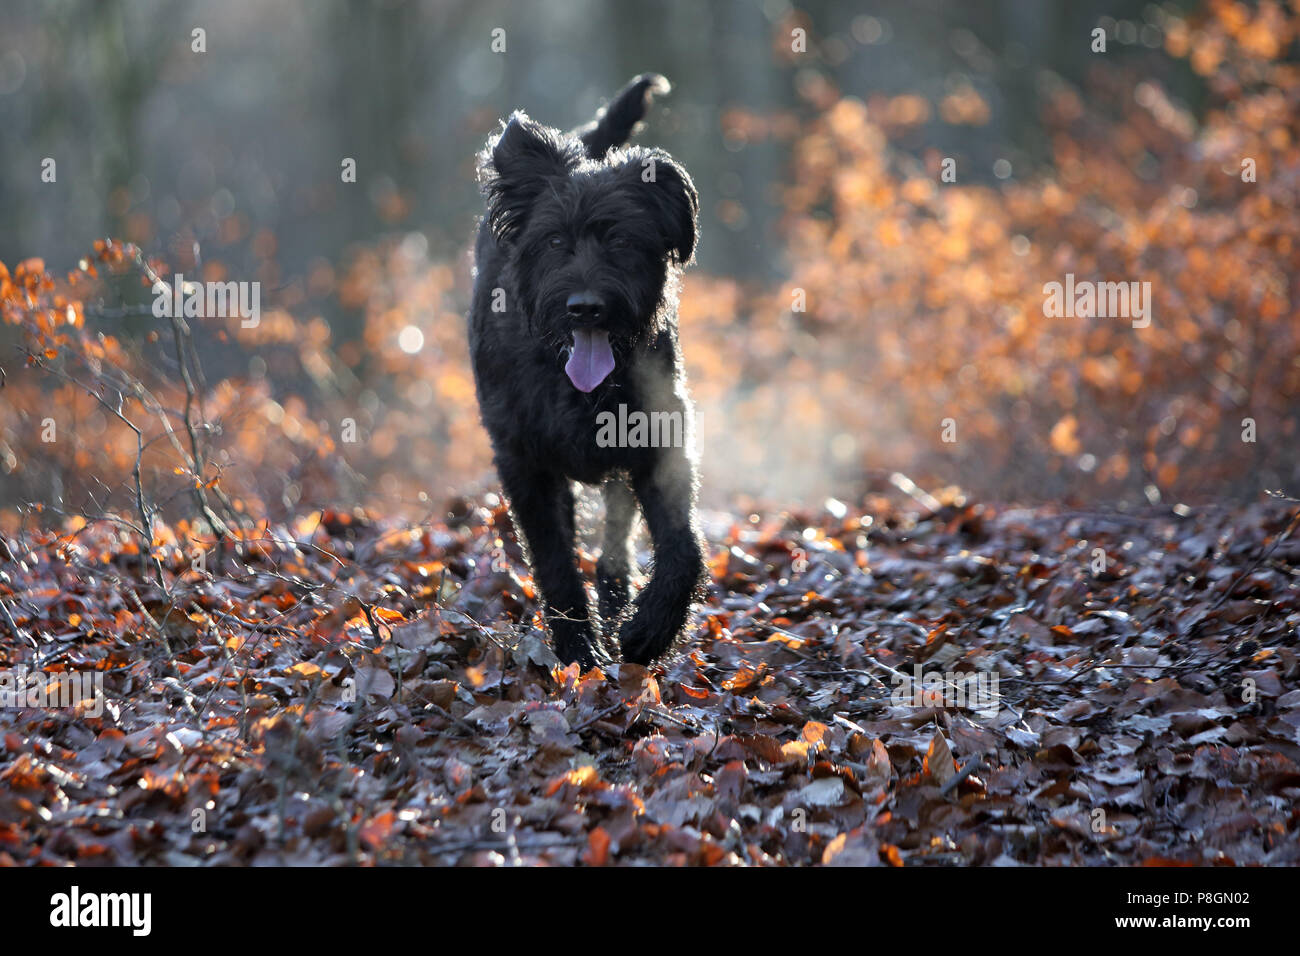 Nueva Kaetwin, Alemania, Giant Schnauzer ejecuta jadeando en el bosque en hojas de otoño Foto de stock